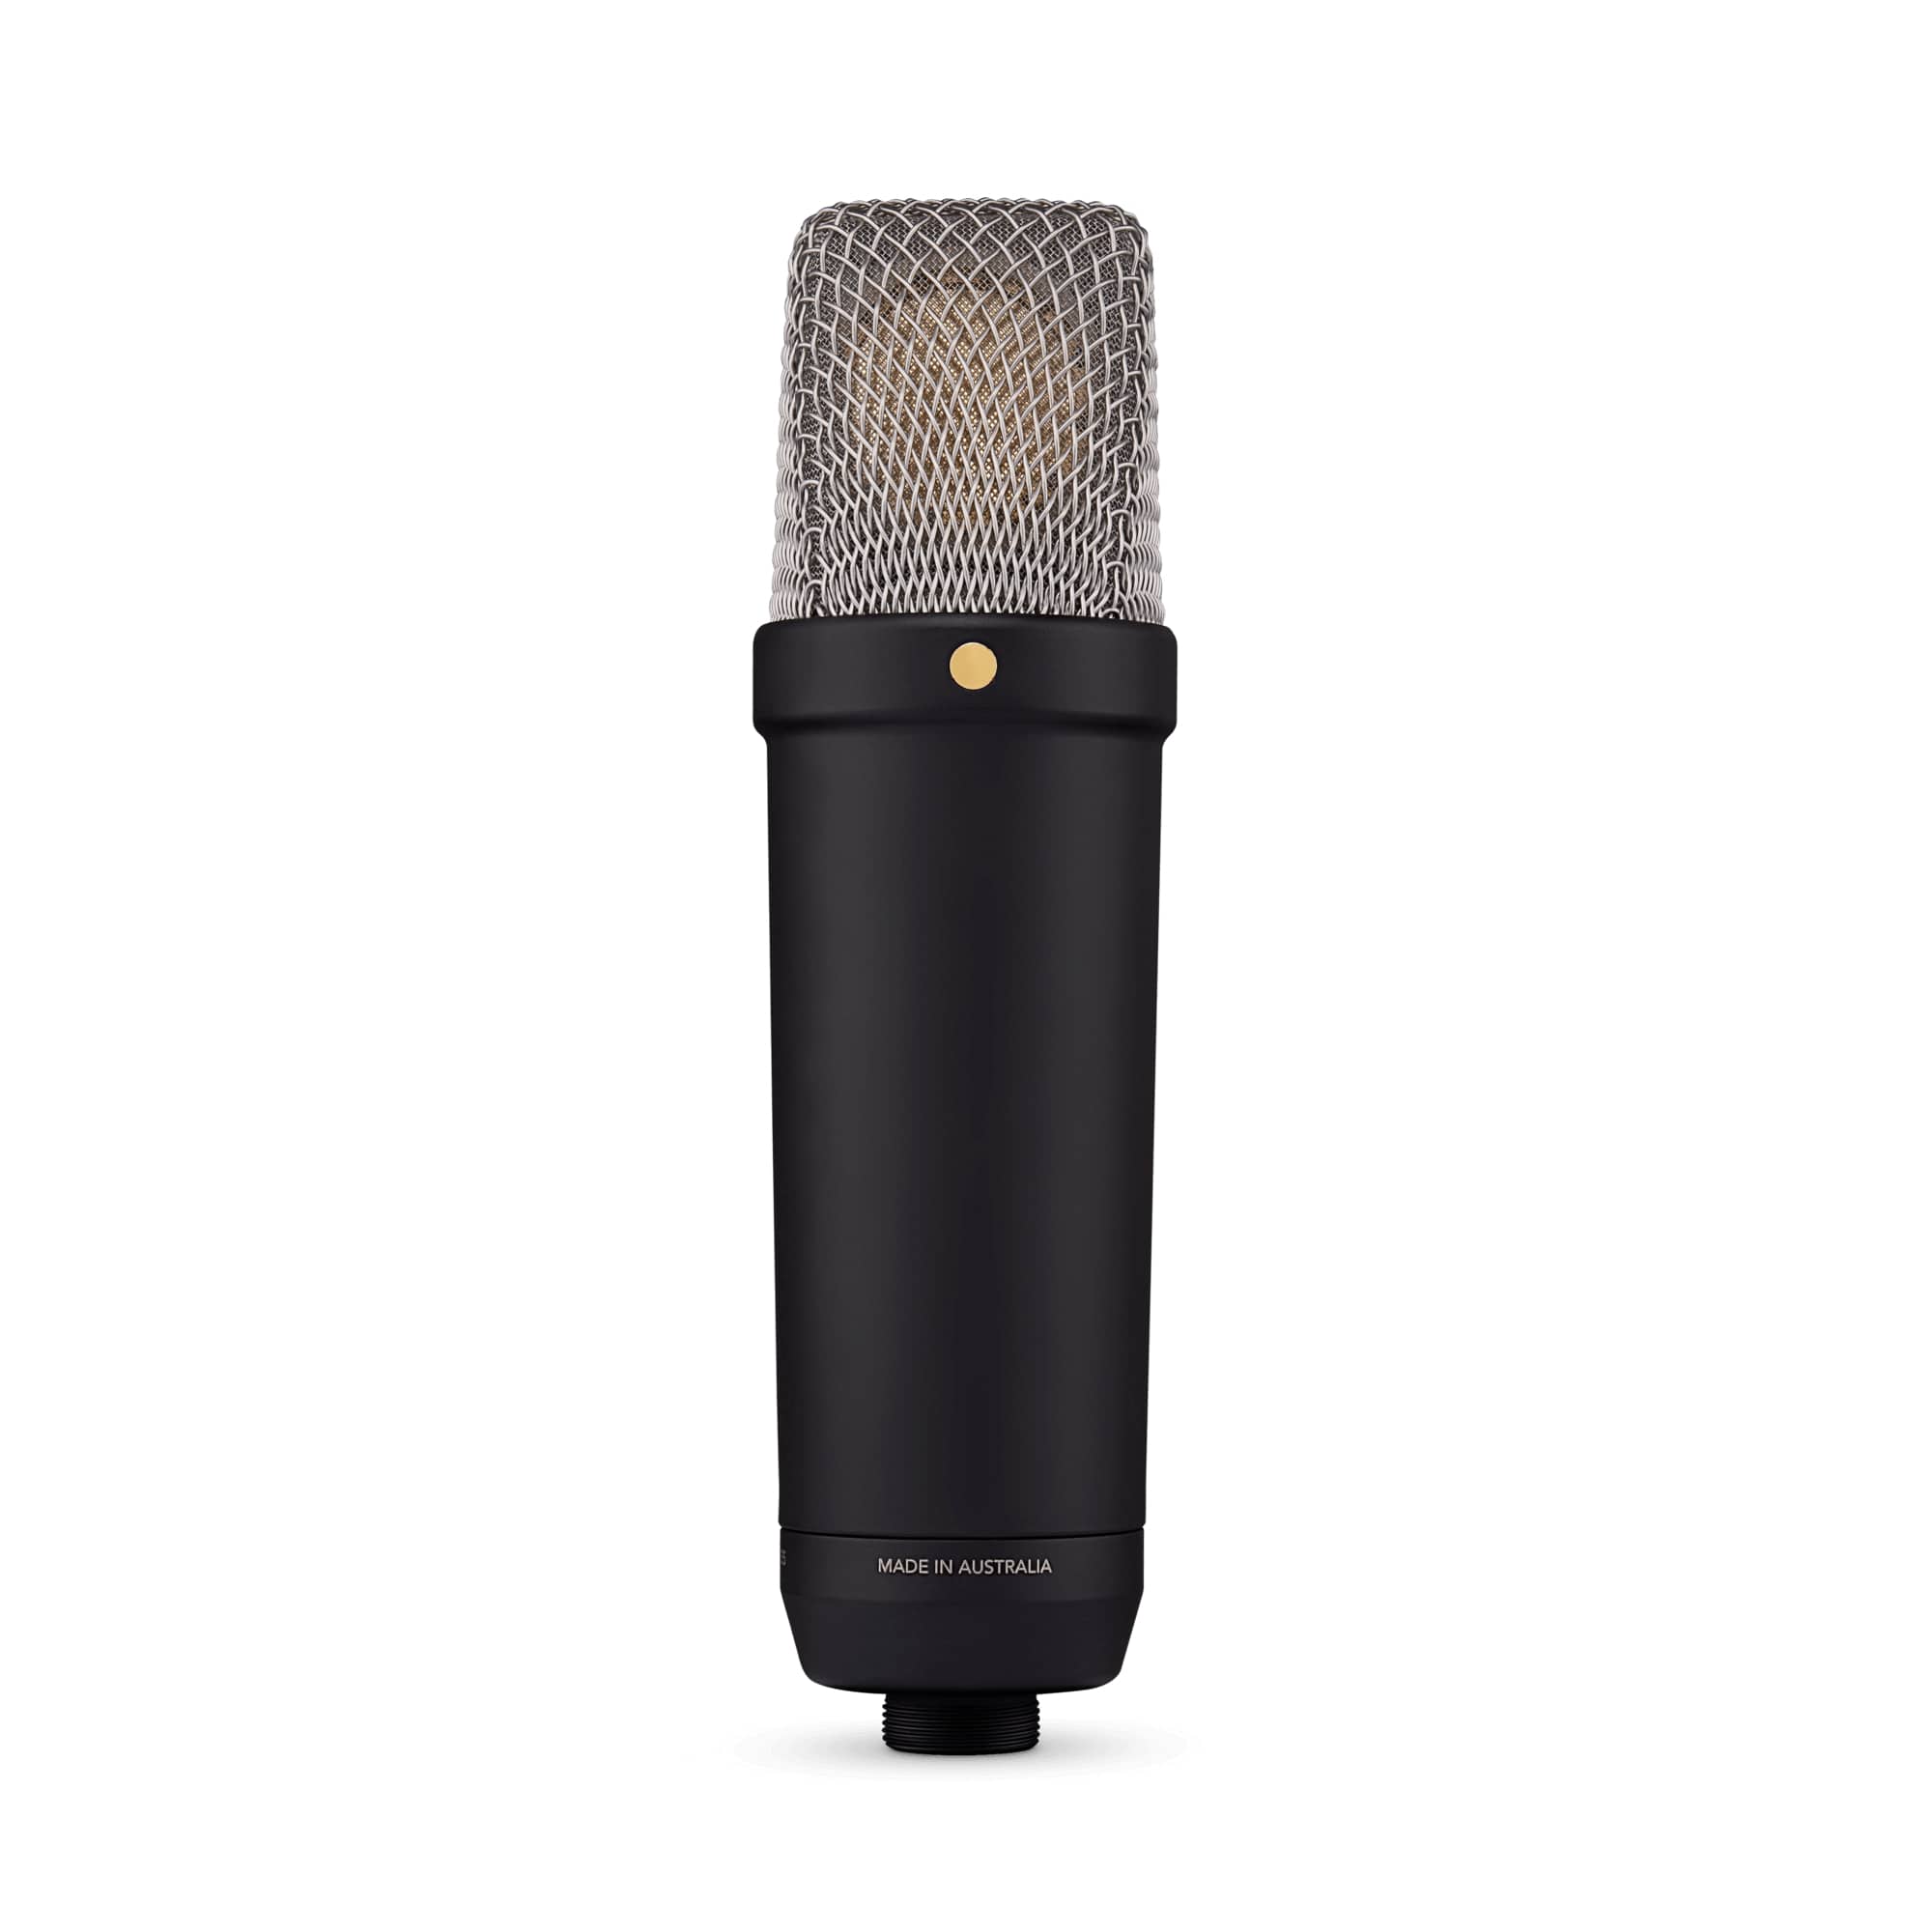 Студийные микрофоны Rode NT1 5th Generation Black студийные микрофоны mojave ma 100